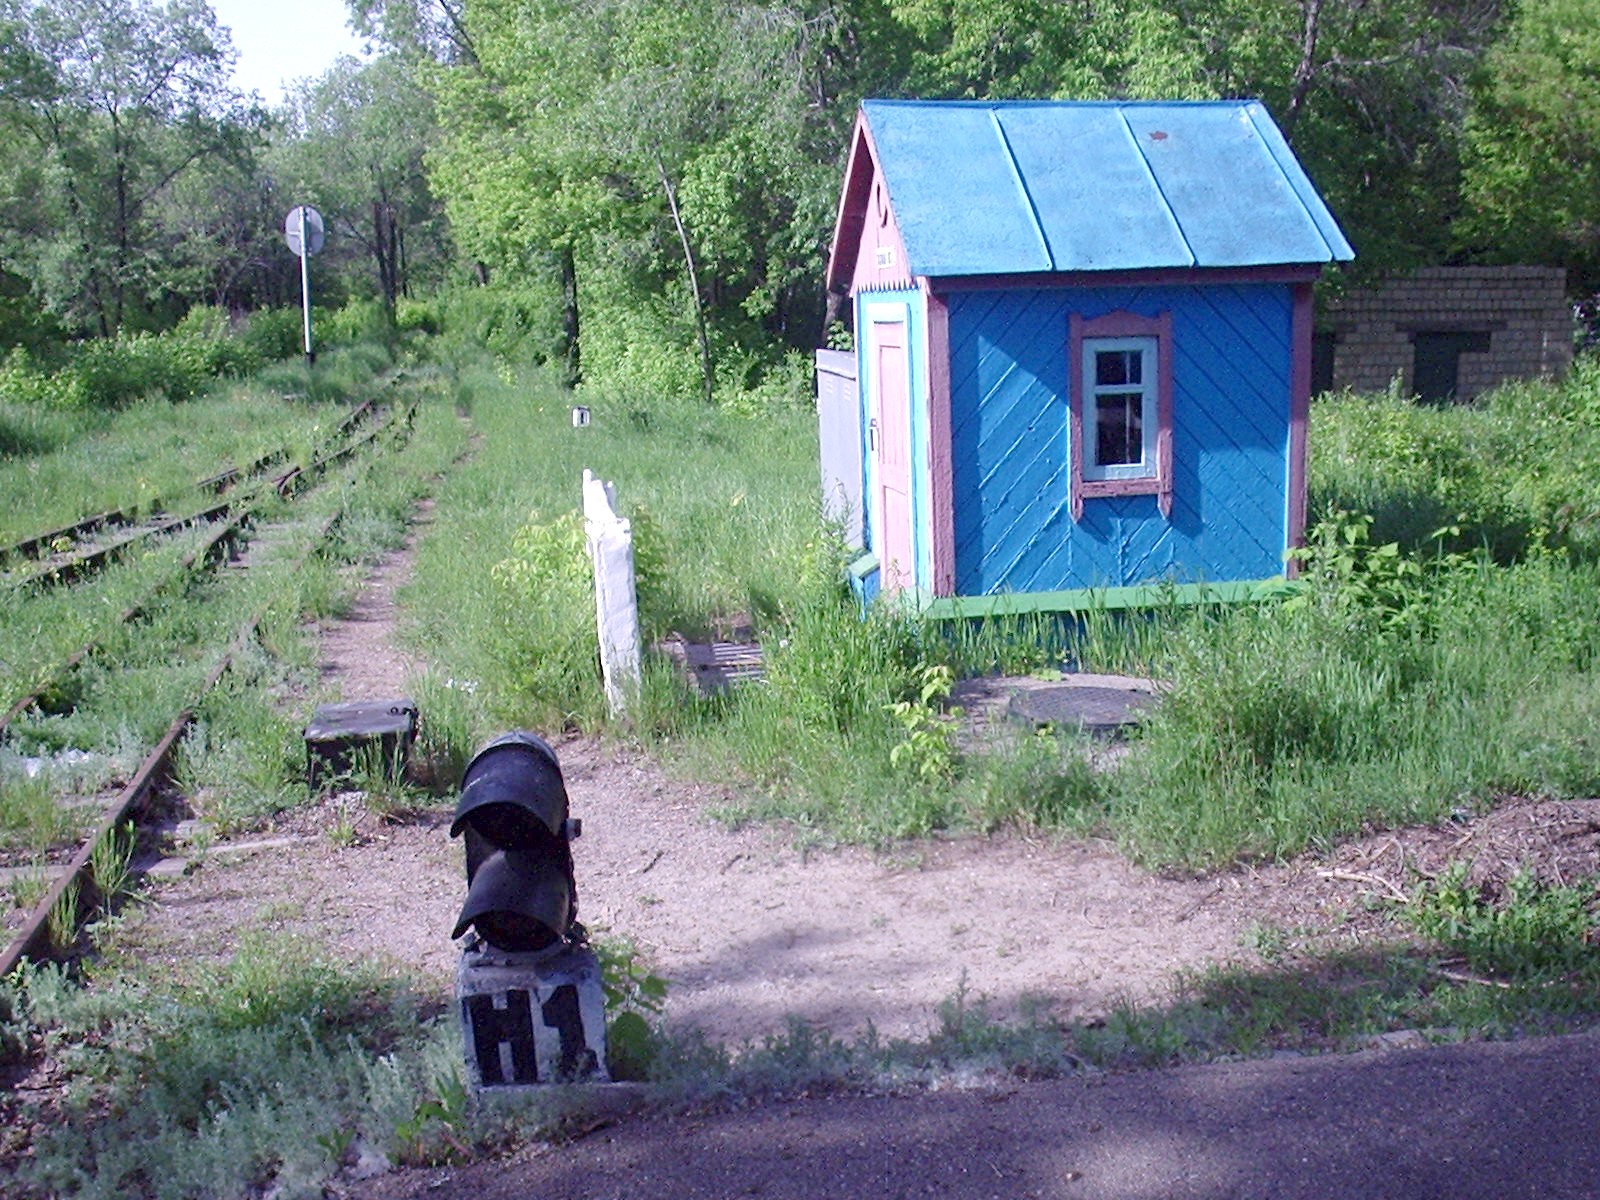 Карагандинская детская железная дорога - фотографии, сделанные в 2007 году (часть 2)